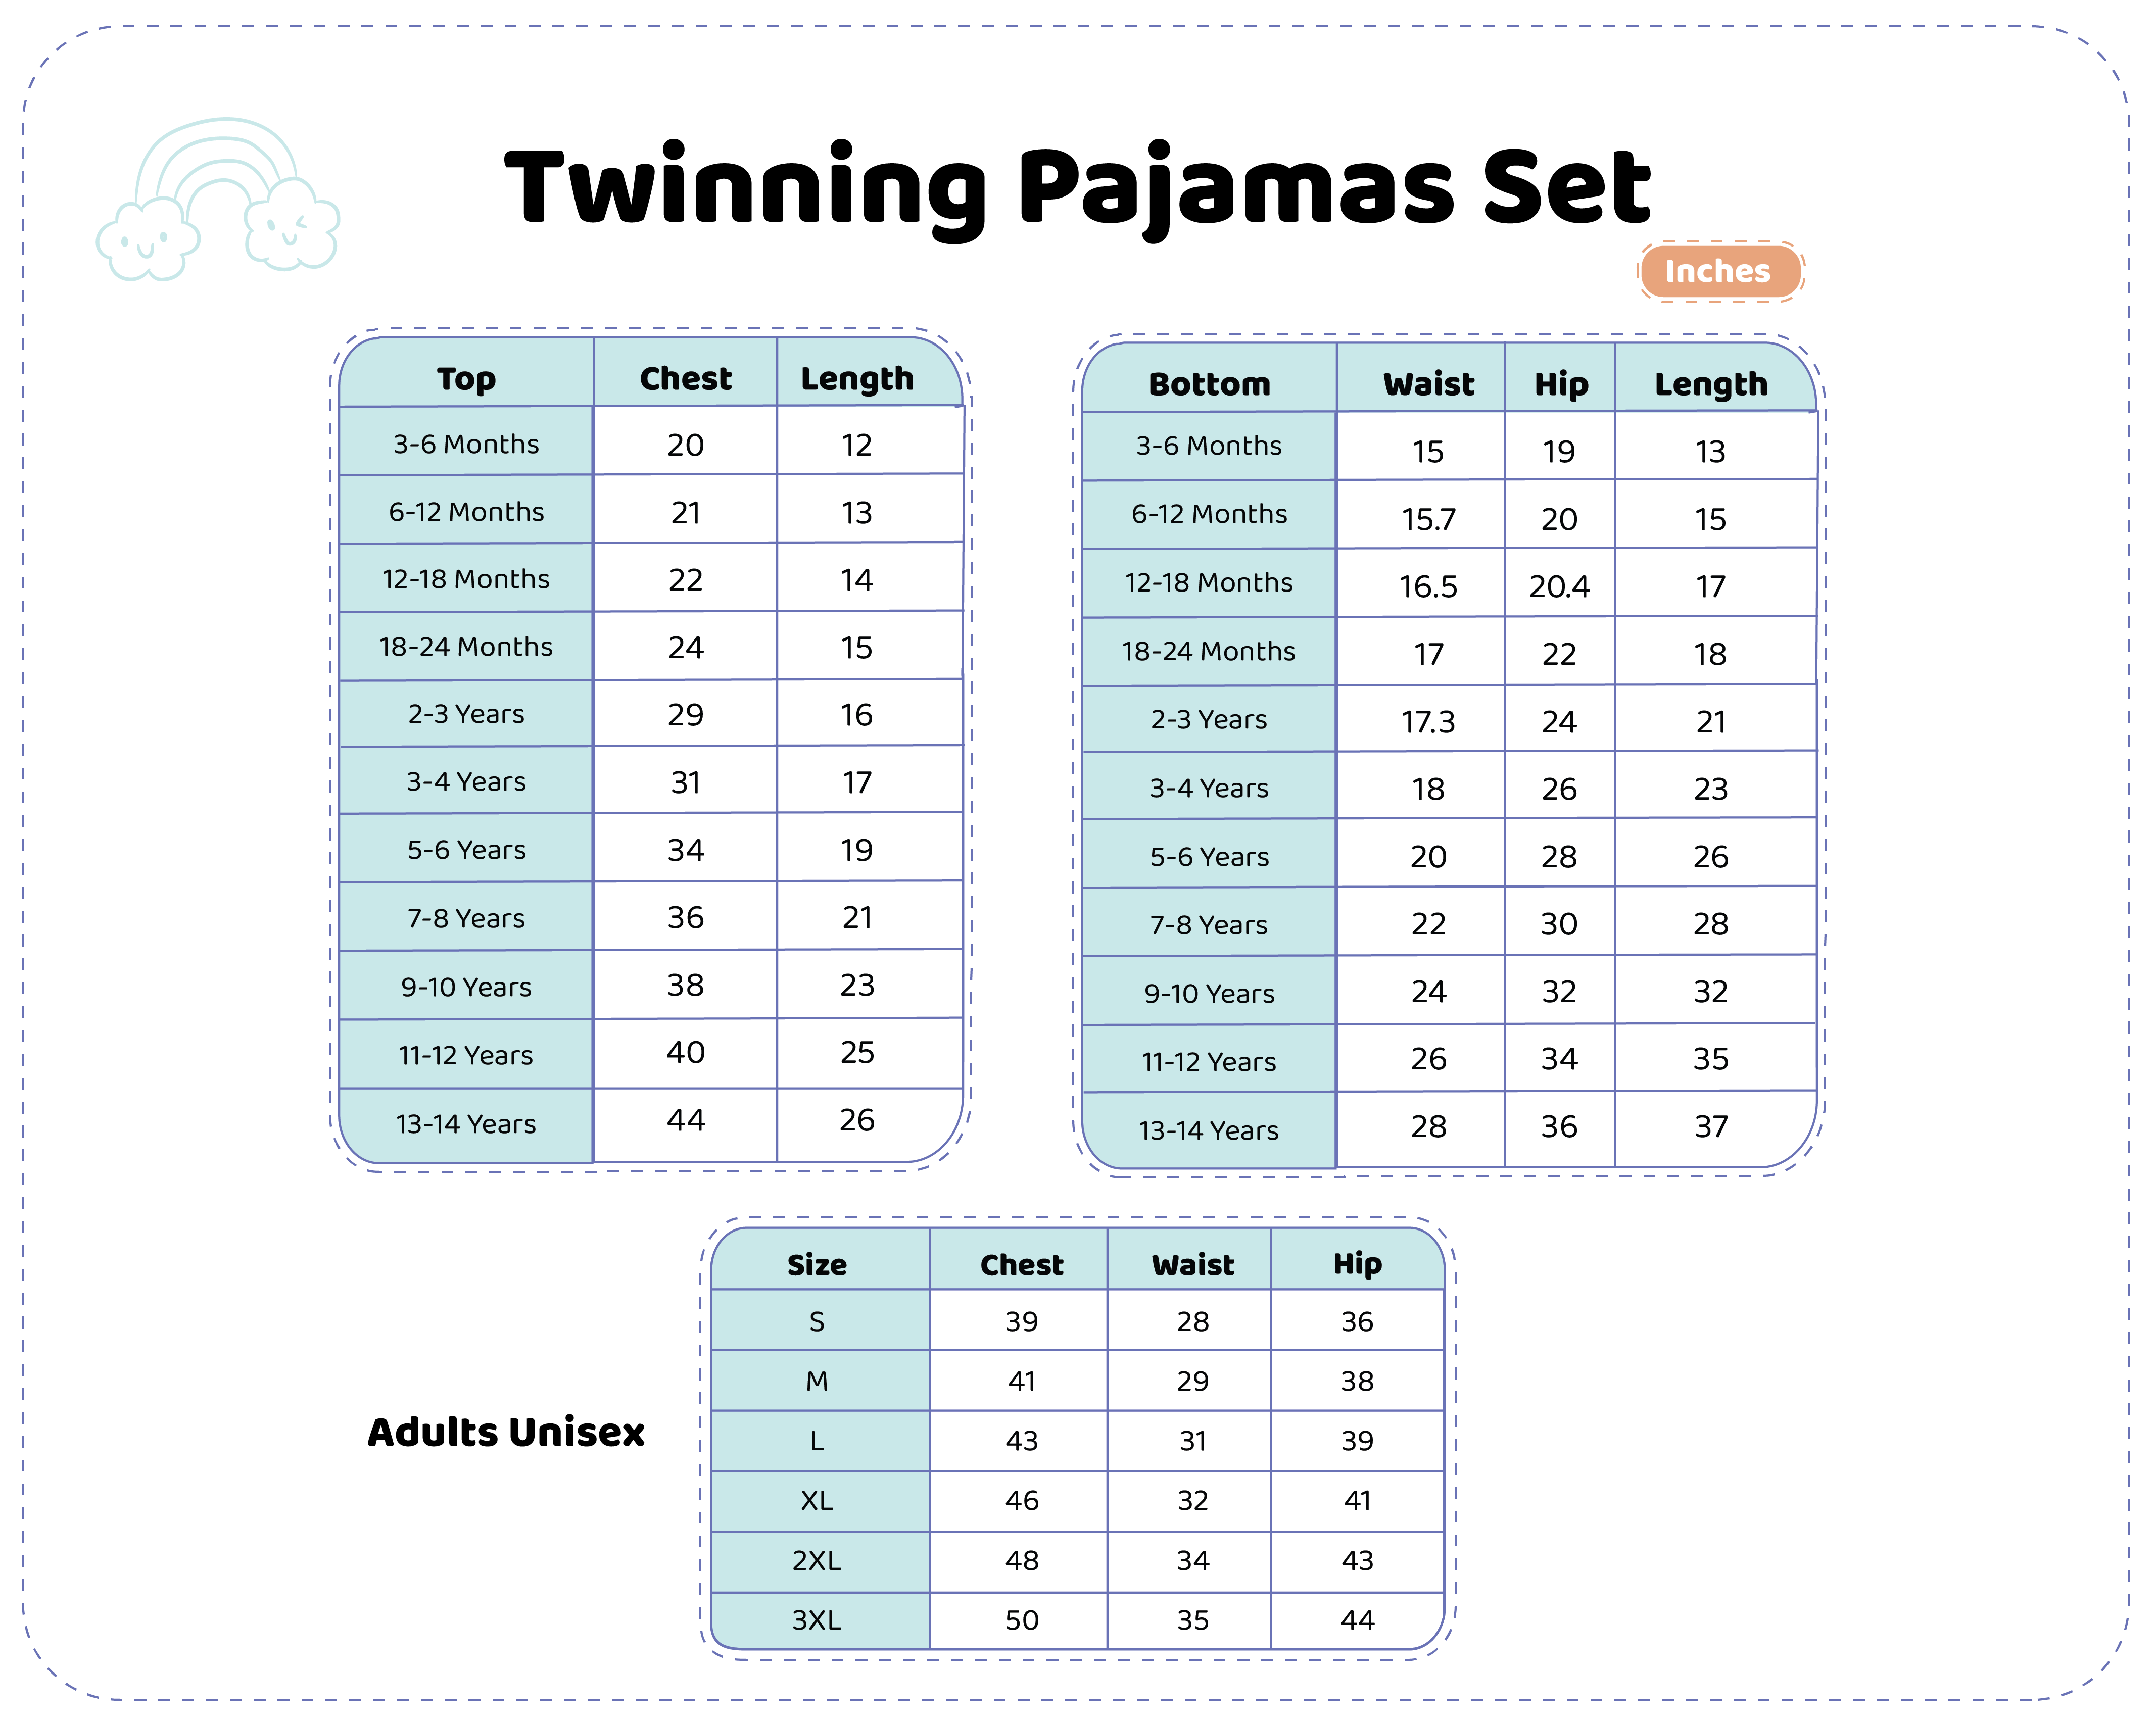 Pajama set twinning M6 to 3XL